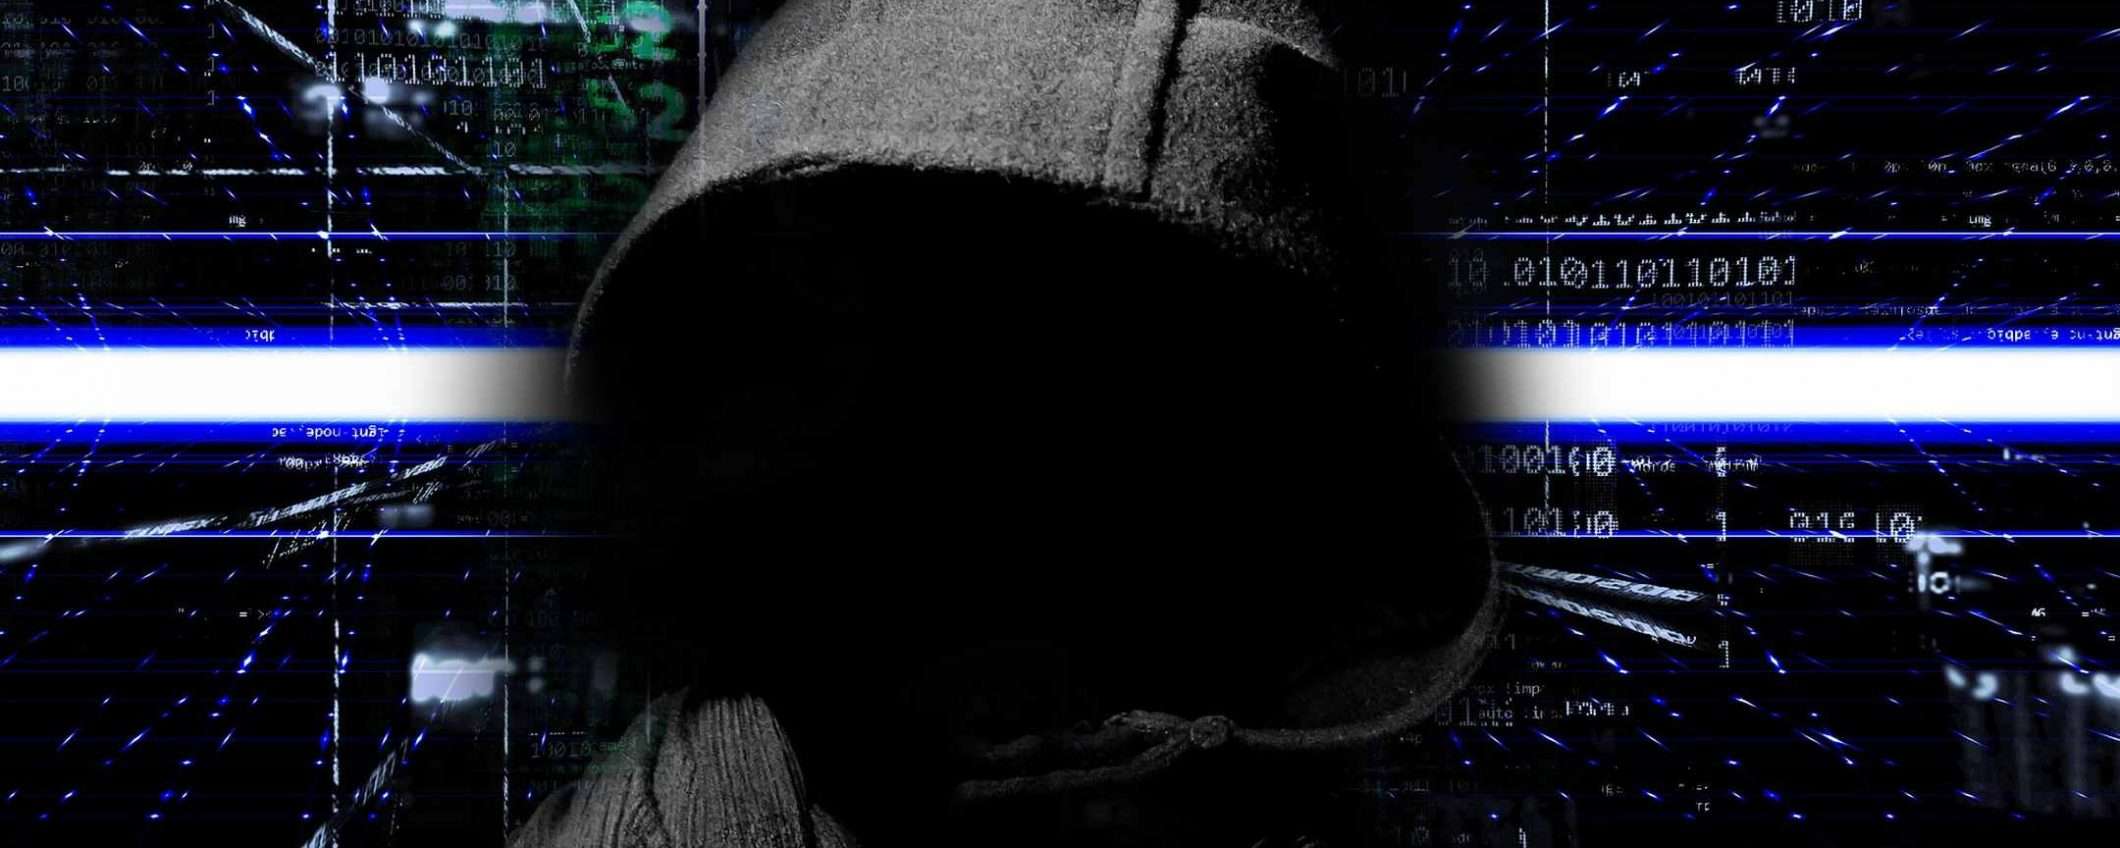 Il ransomware Ryuk si propaga tramite rete locale